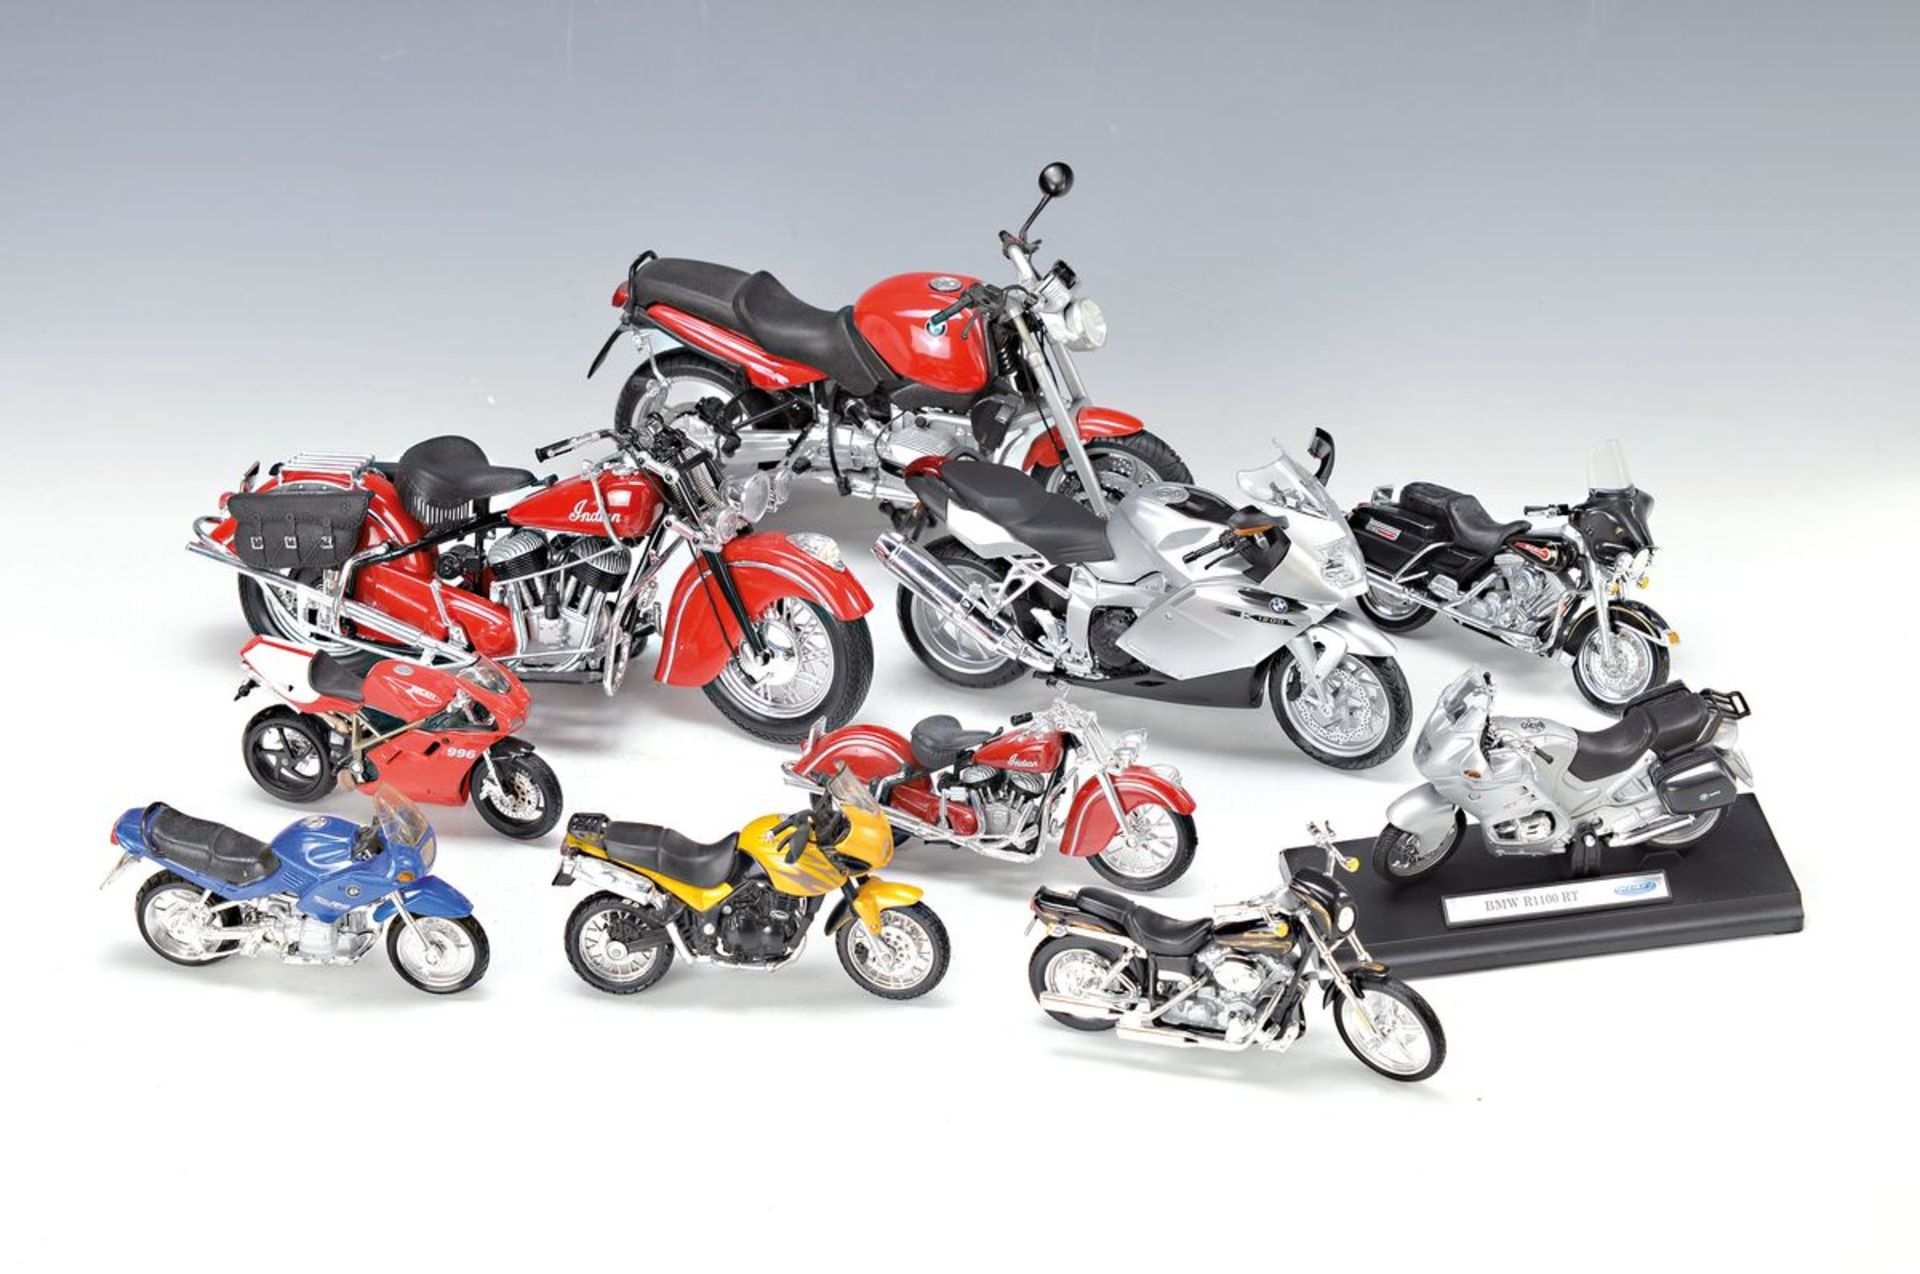 10 Modell-Motorräder, 1980er/1990er Jahre, BMW, Indian, Harley-Davidson und Ducati, nur leichte